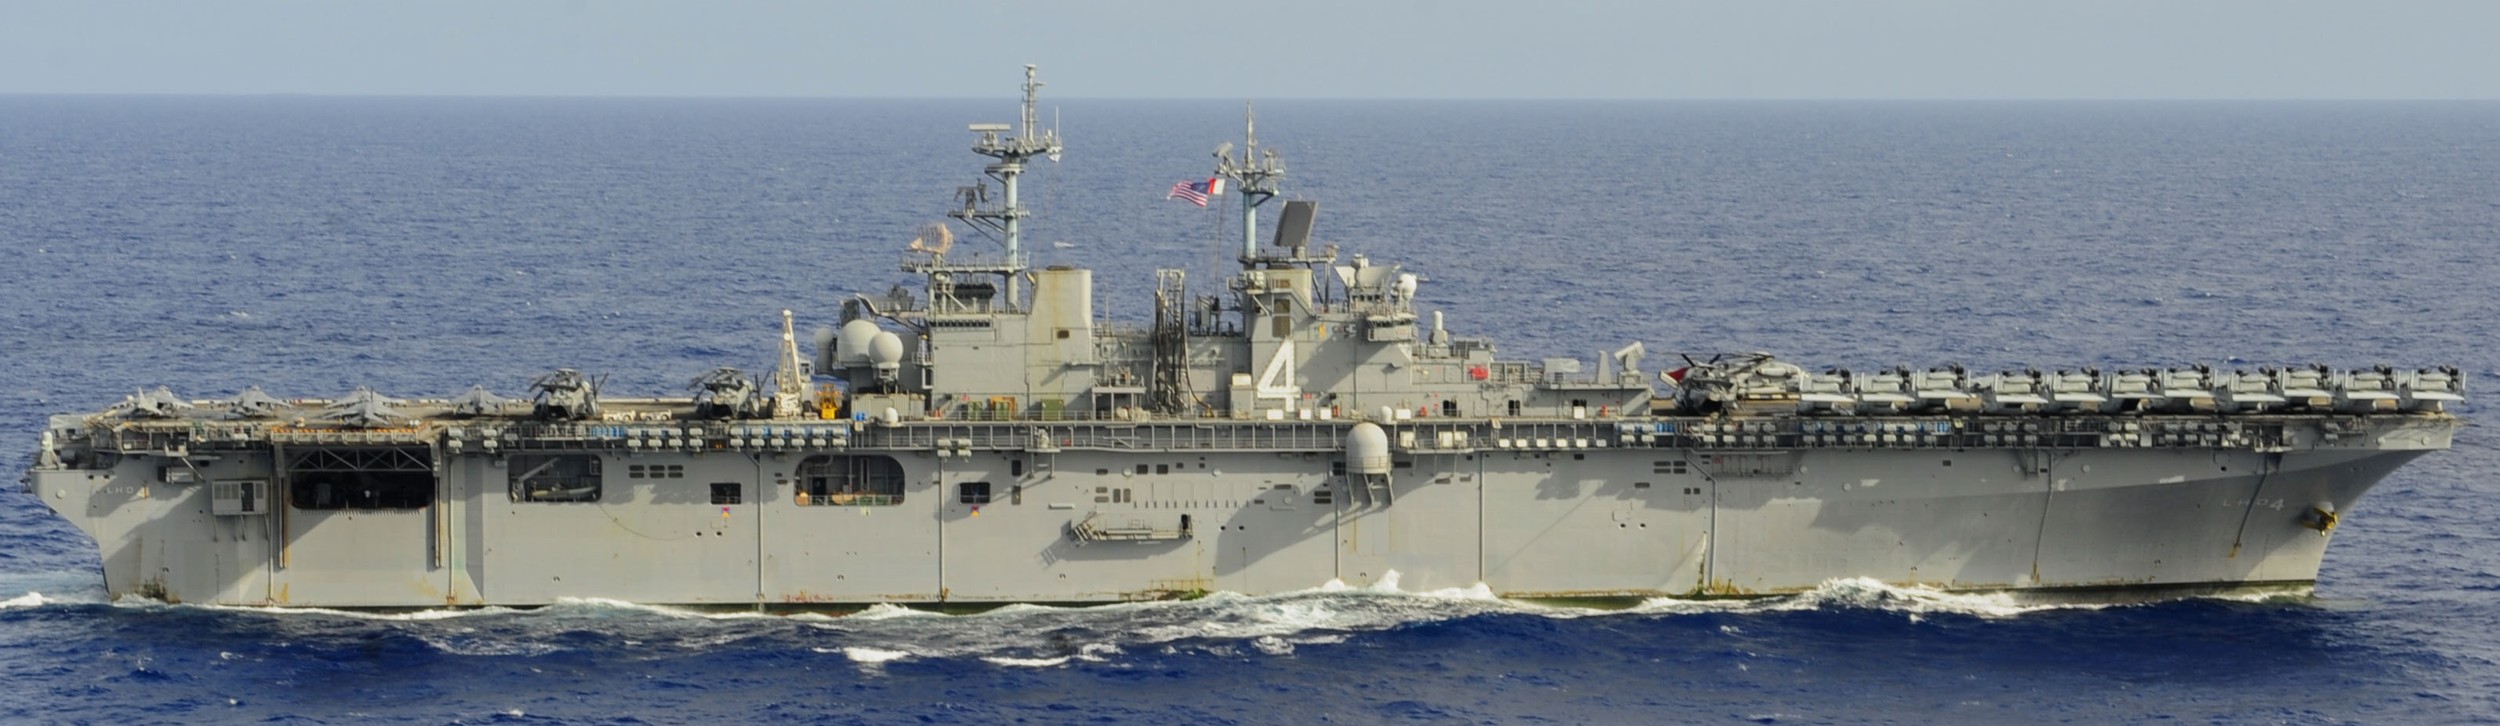 lhd-4 uss boxer wasp class amphibious assault ship dock landing us navy marines vmm-166 94